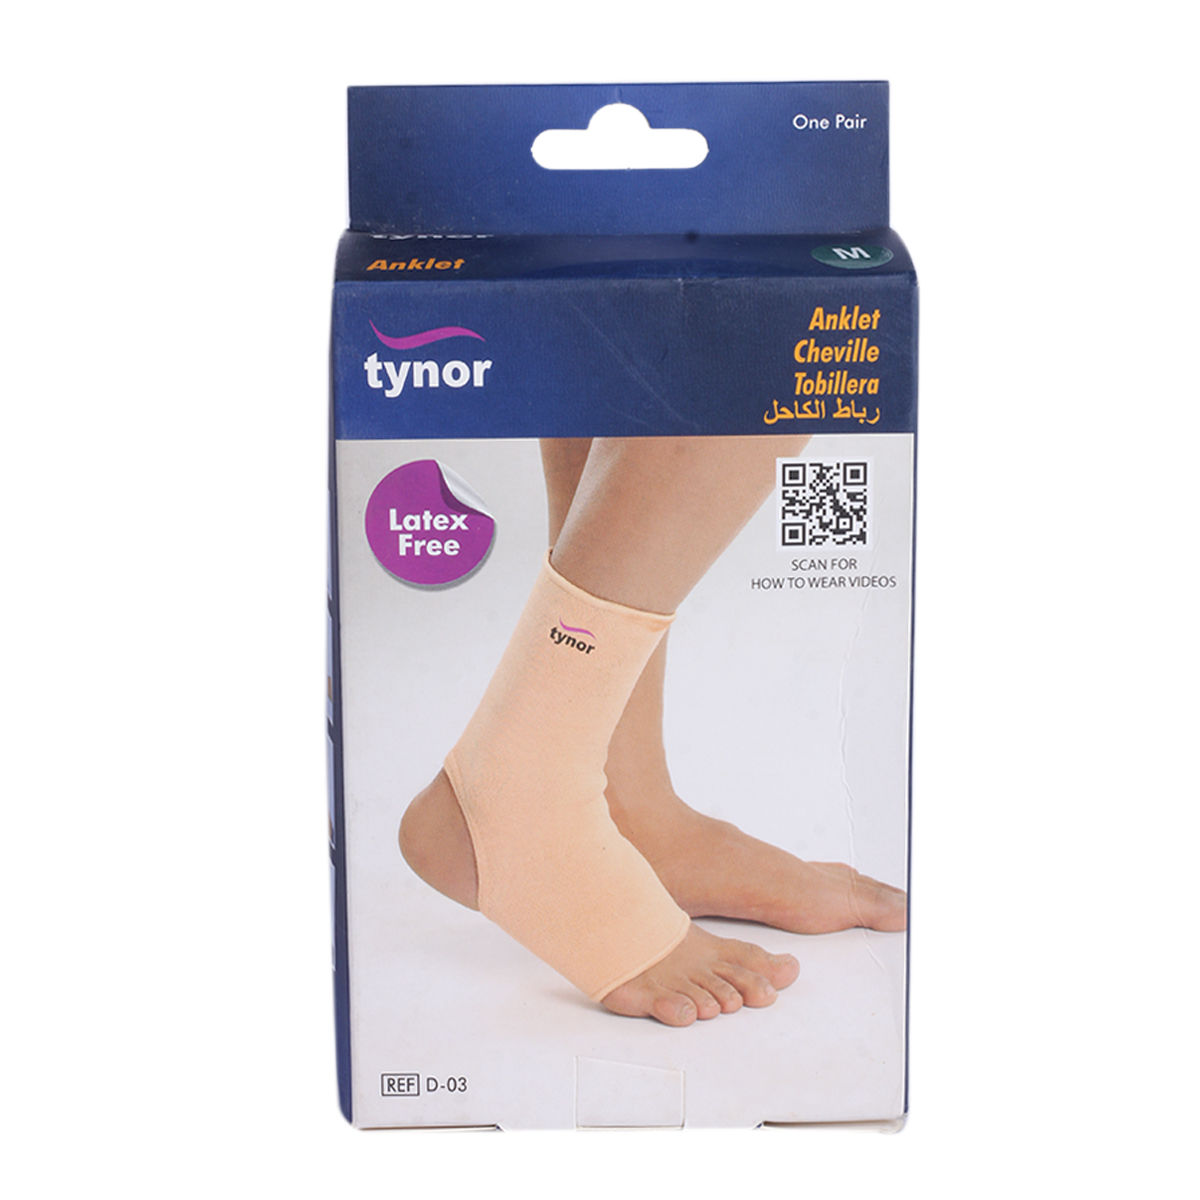 Tynor Anklet Medium, 1 Pair, Pack of 1 